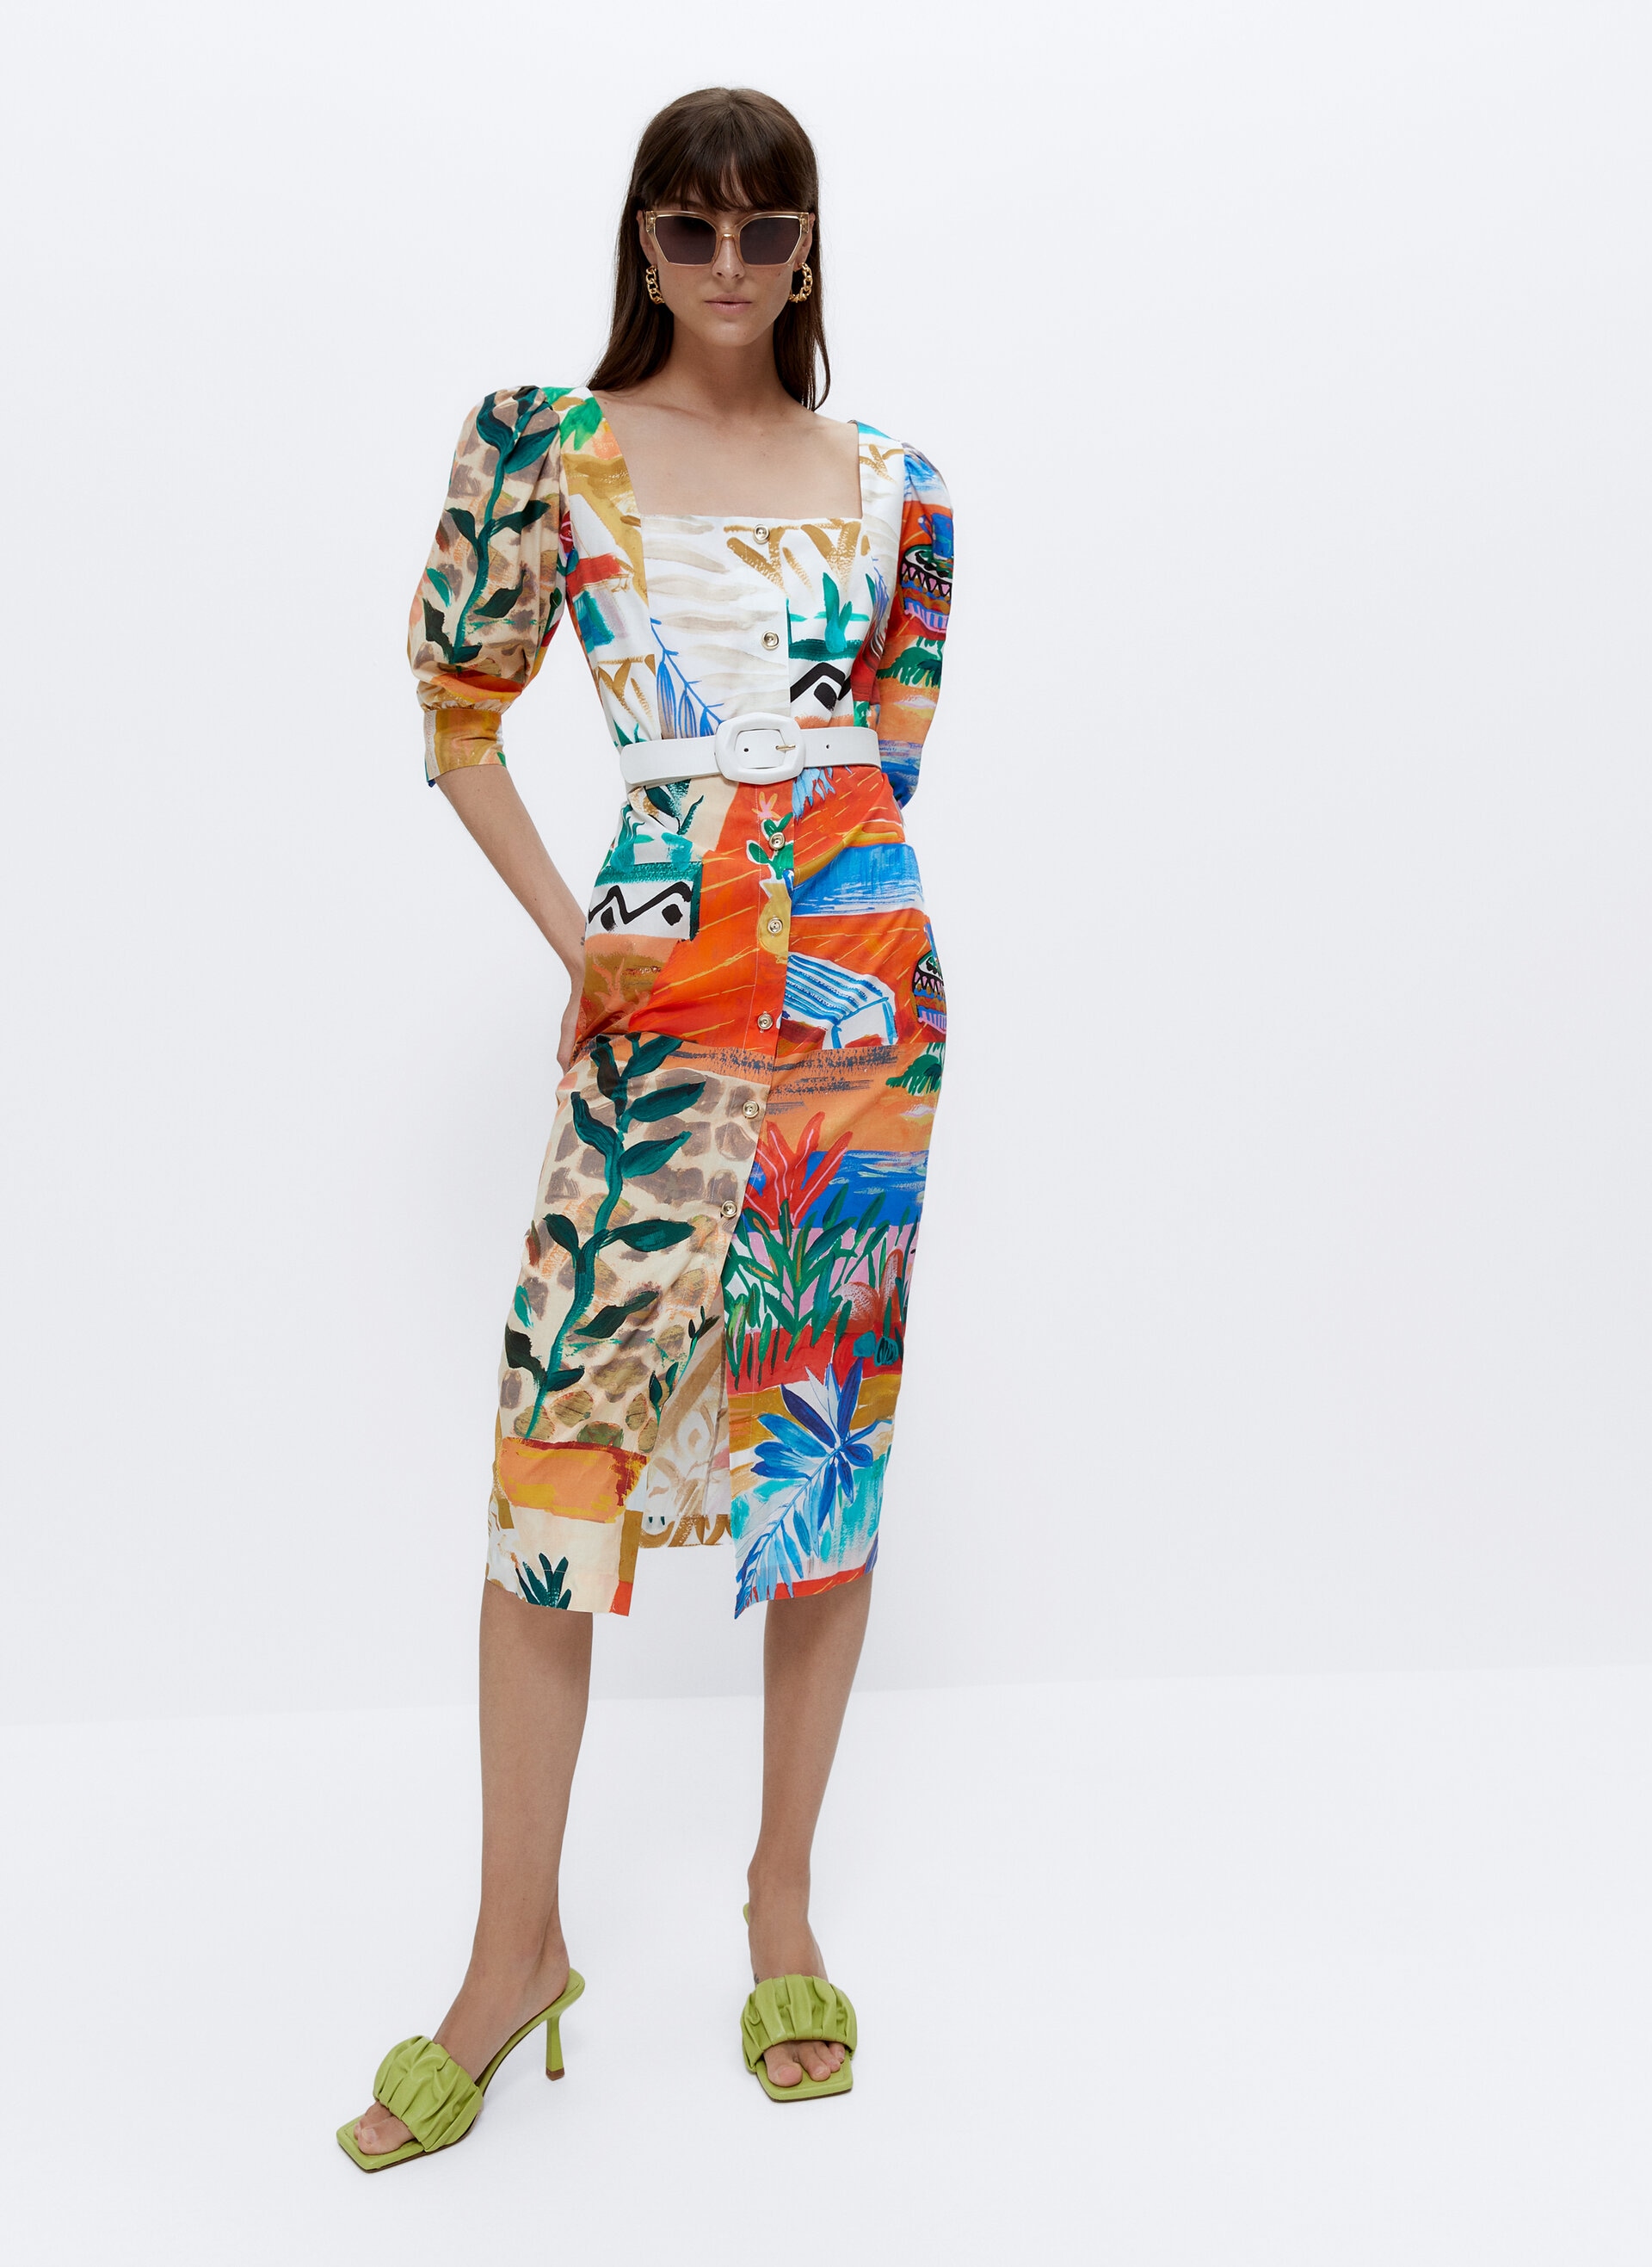 Fotos: Los vestidos largos y más vendidos de Uterqüe que rejuvenecen a los 40 y que nos hacen soñar con el verano | Mujer